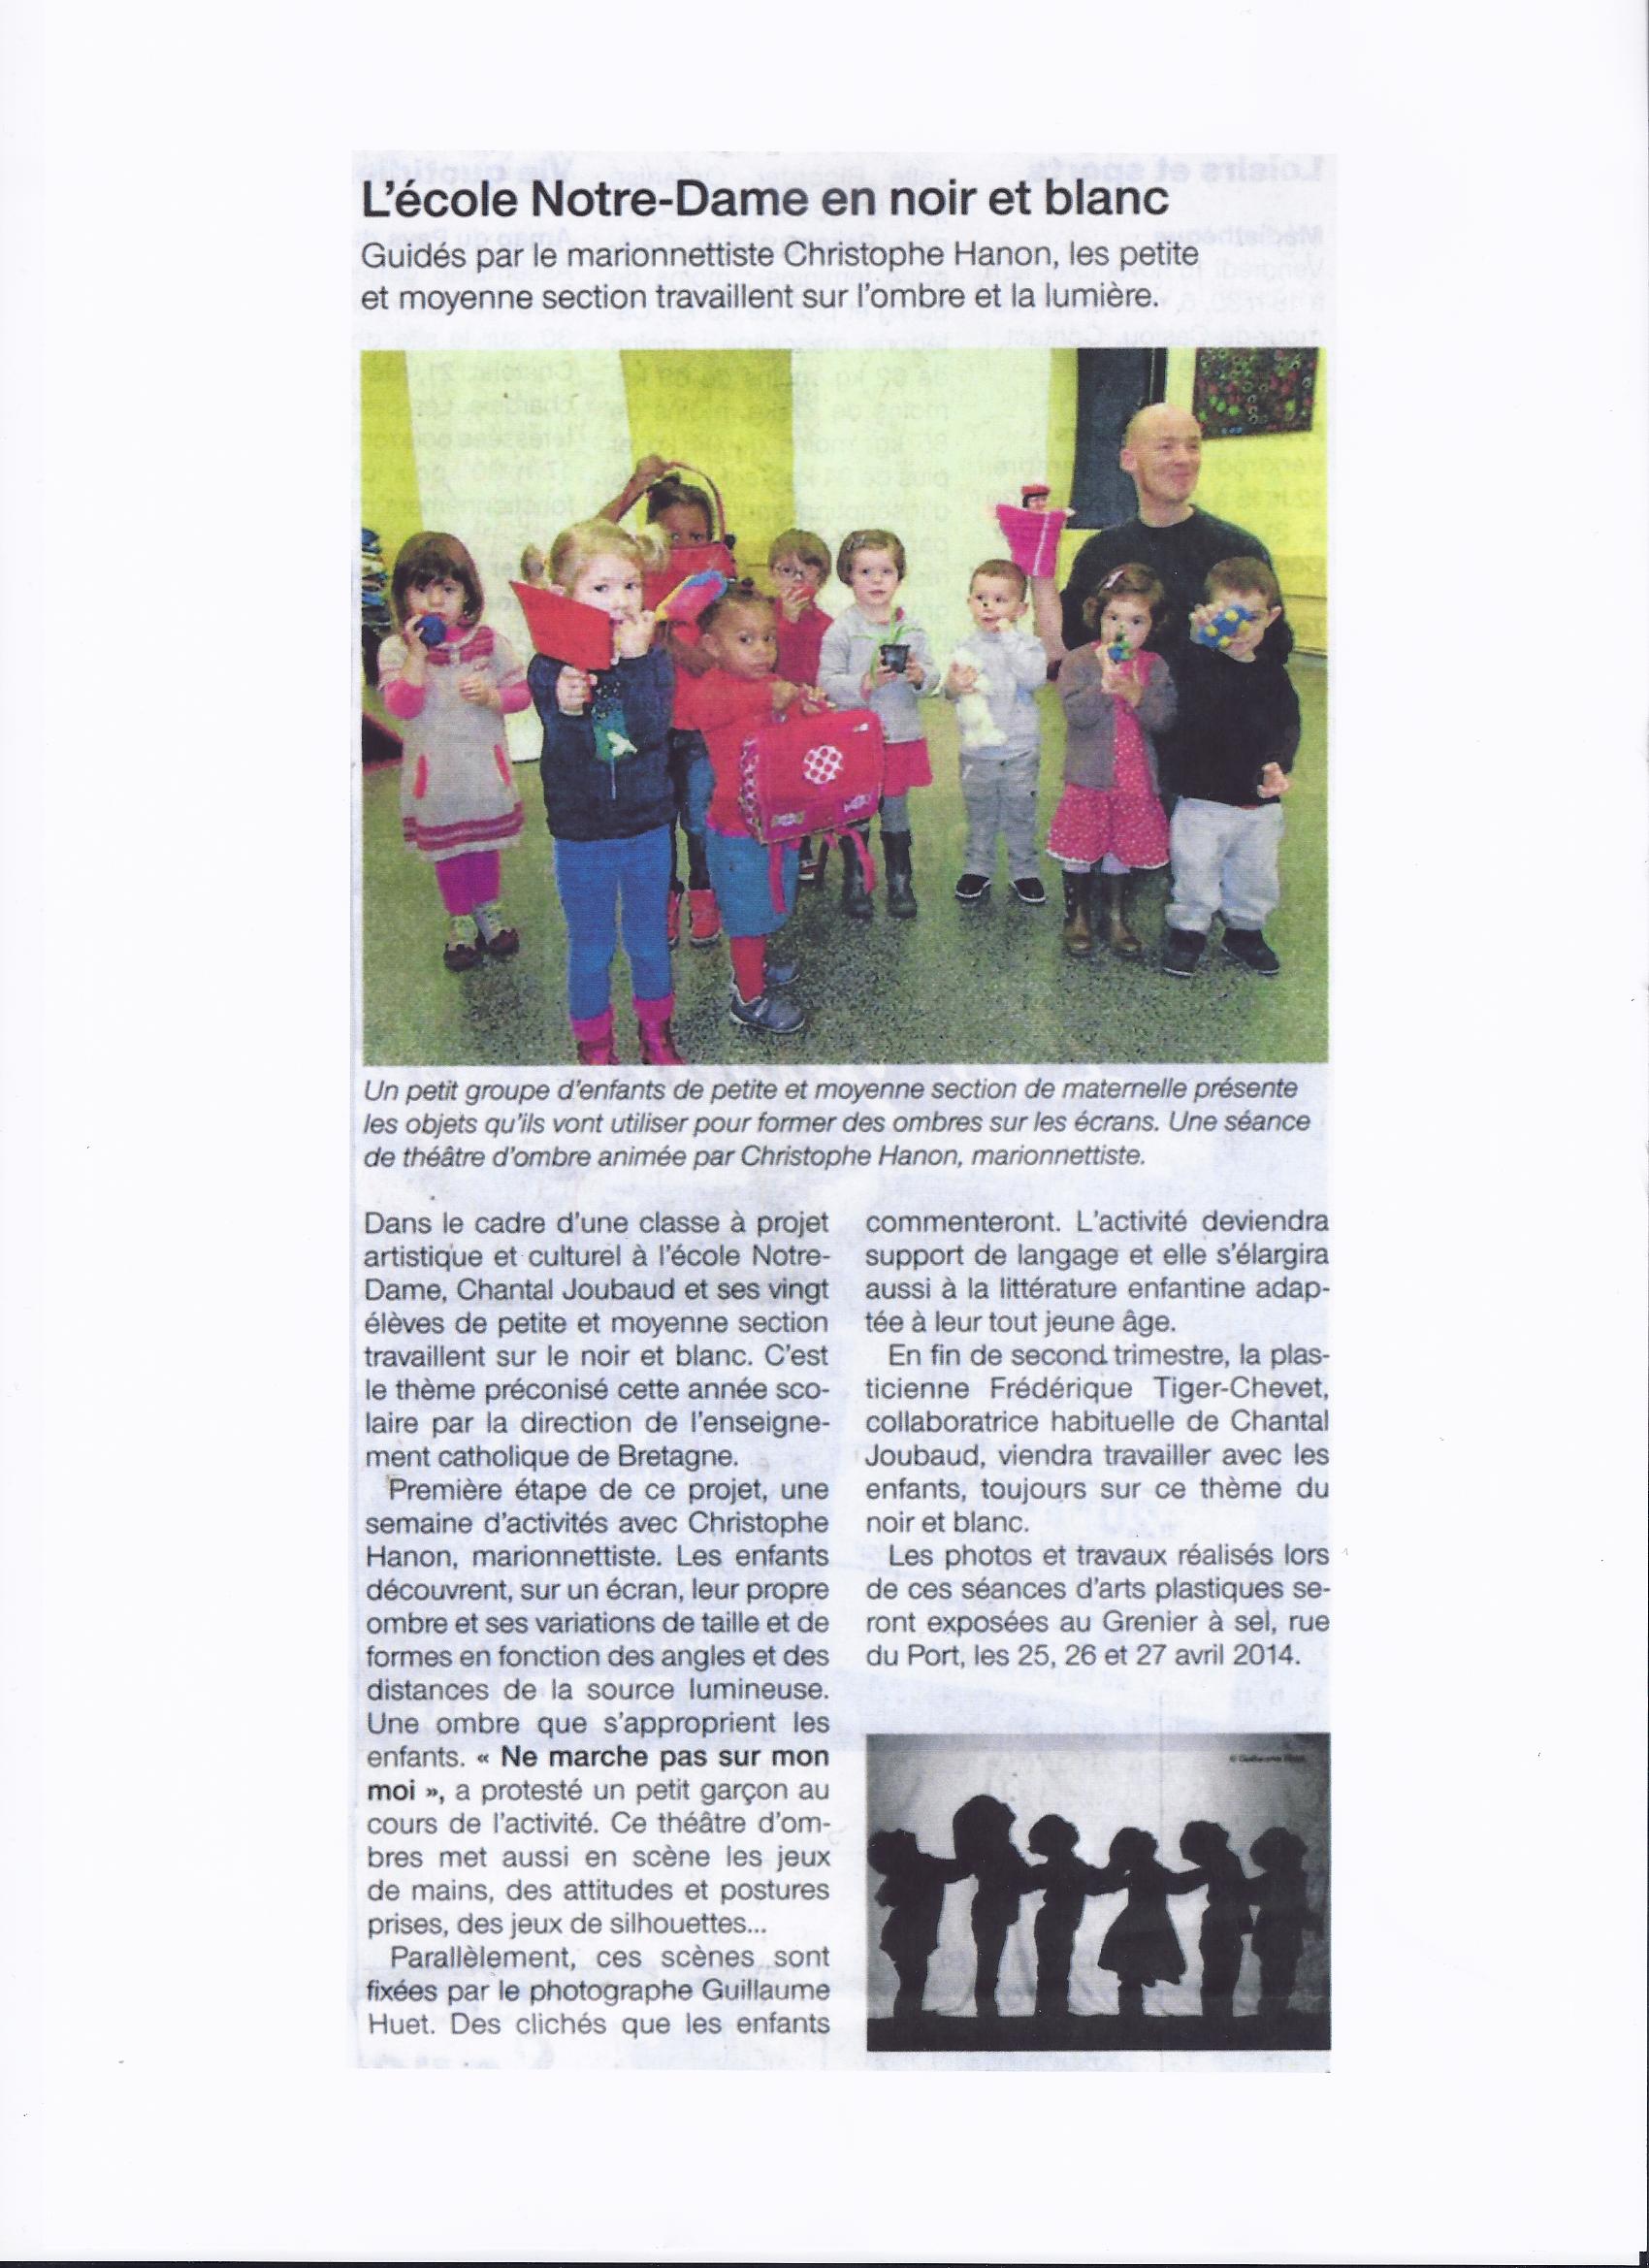 Article de Ouest France (novembre 2013)